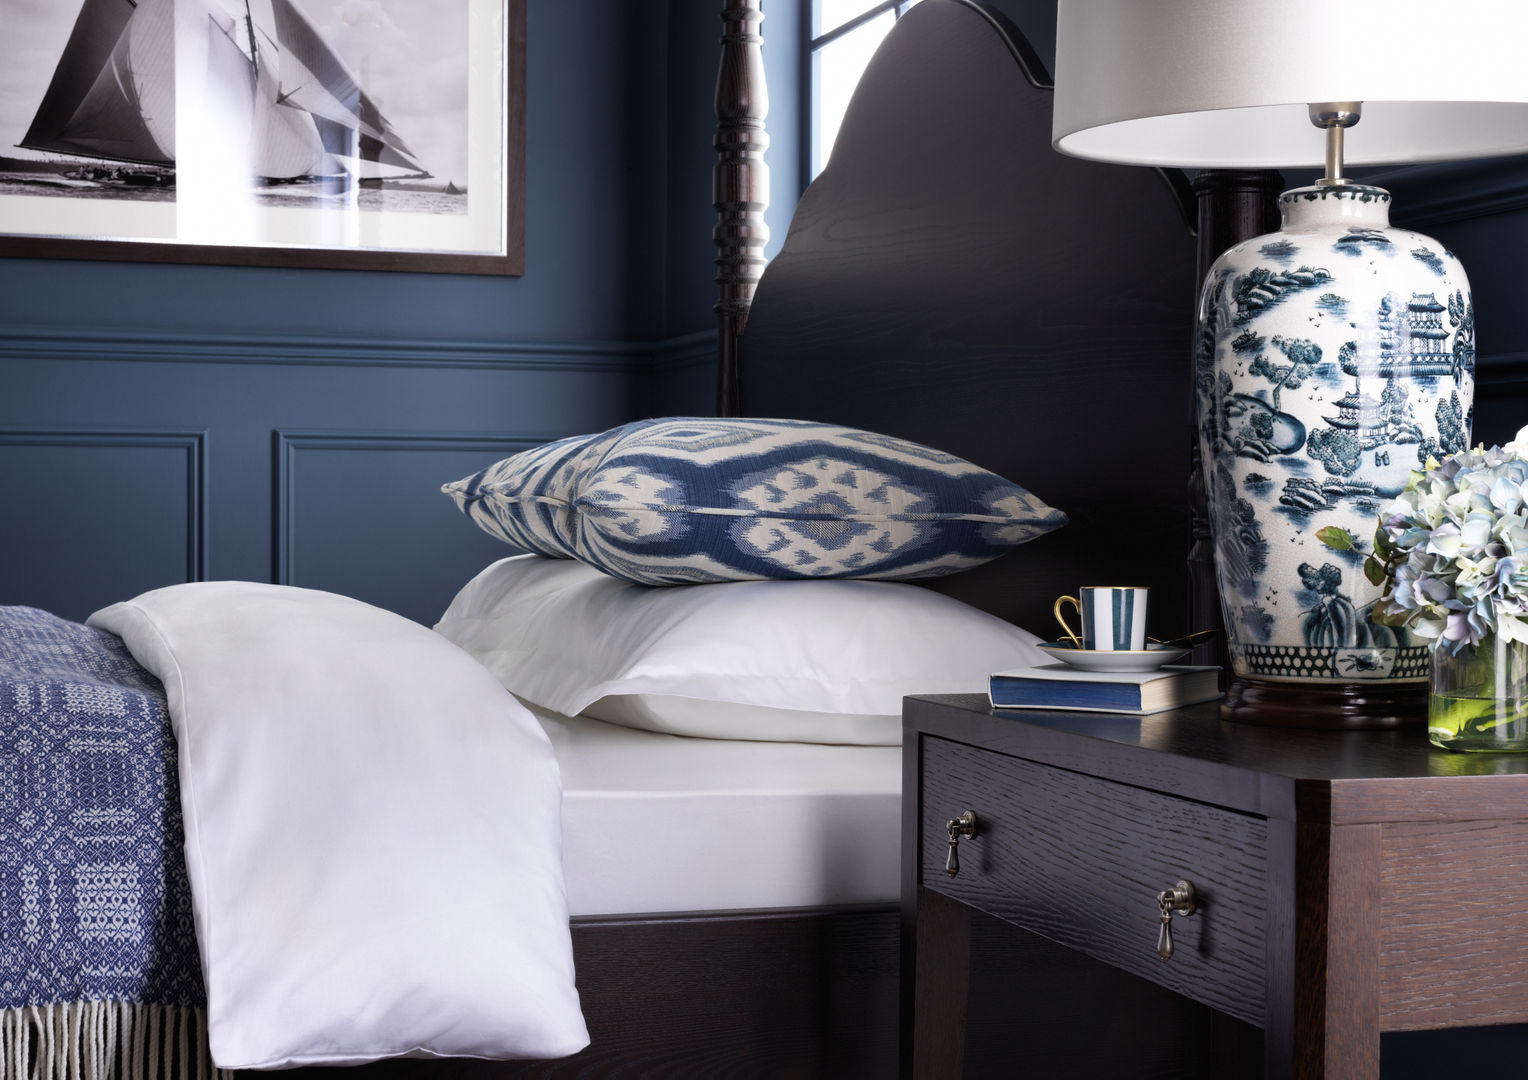 SS16 Style Guide - Coastal Elegance - Bedroom LuxDeco Landelijke slaapkamers country,bedroom,blue,bedside table